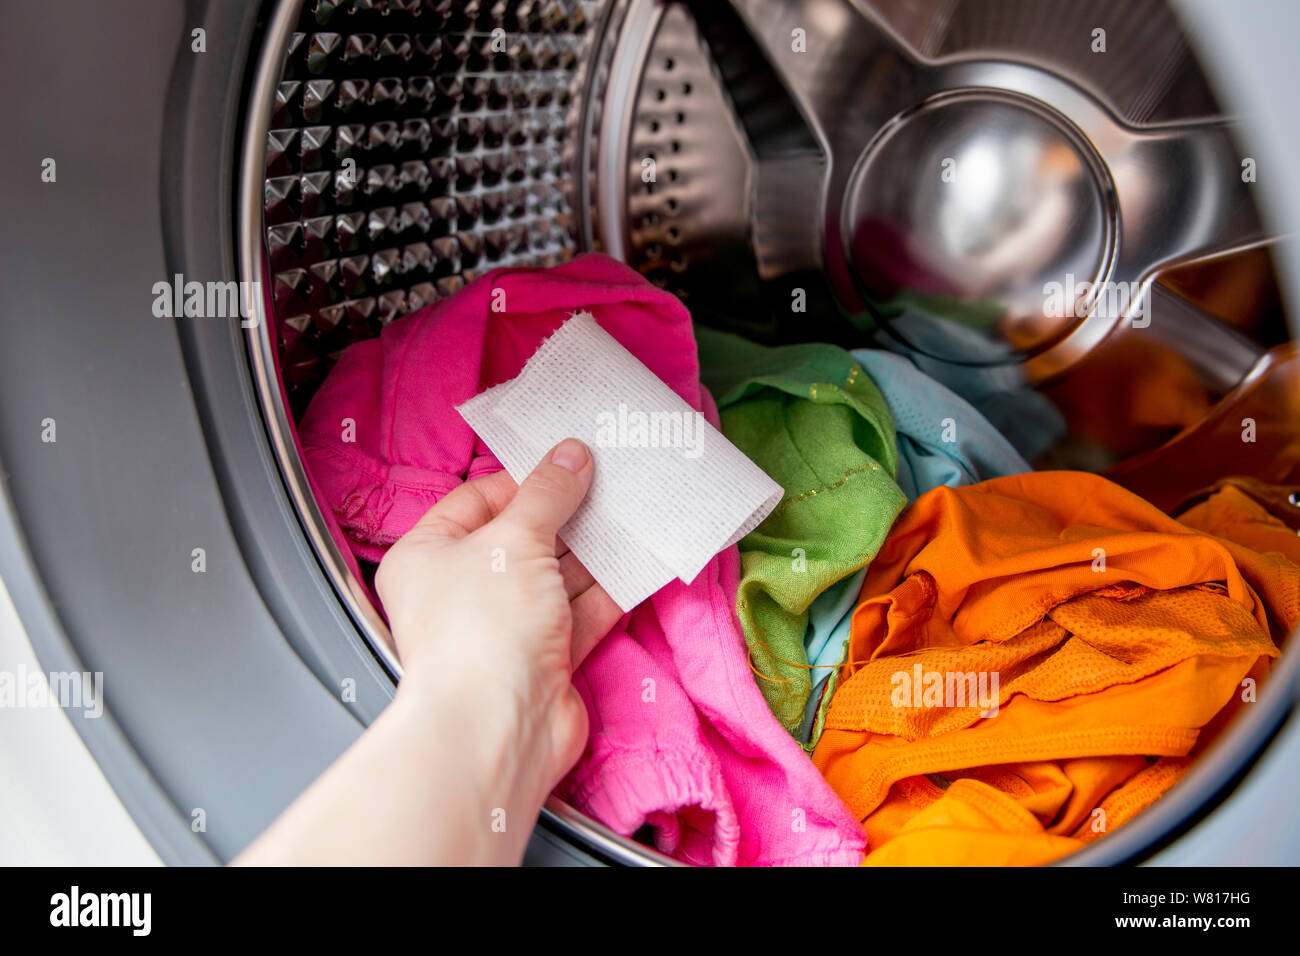 Frau hand Farbe saugfähiges Tuch in einer Waschmaschine geben, ermöglicht gemischten Farbe Kleidung ohne ruinieren Farben Konzept zu waschen. Stockfoto